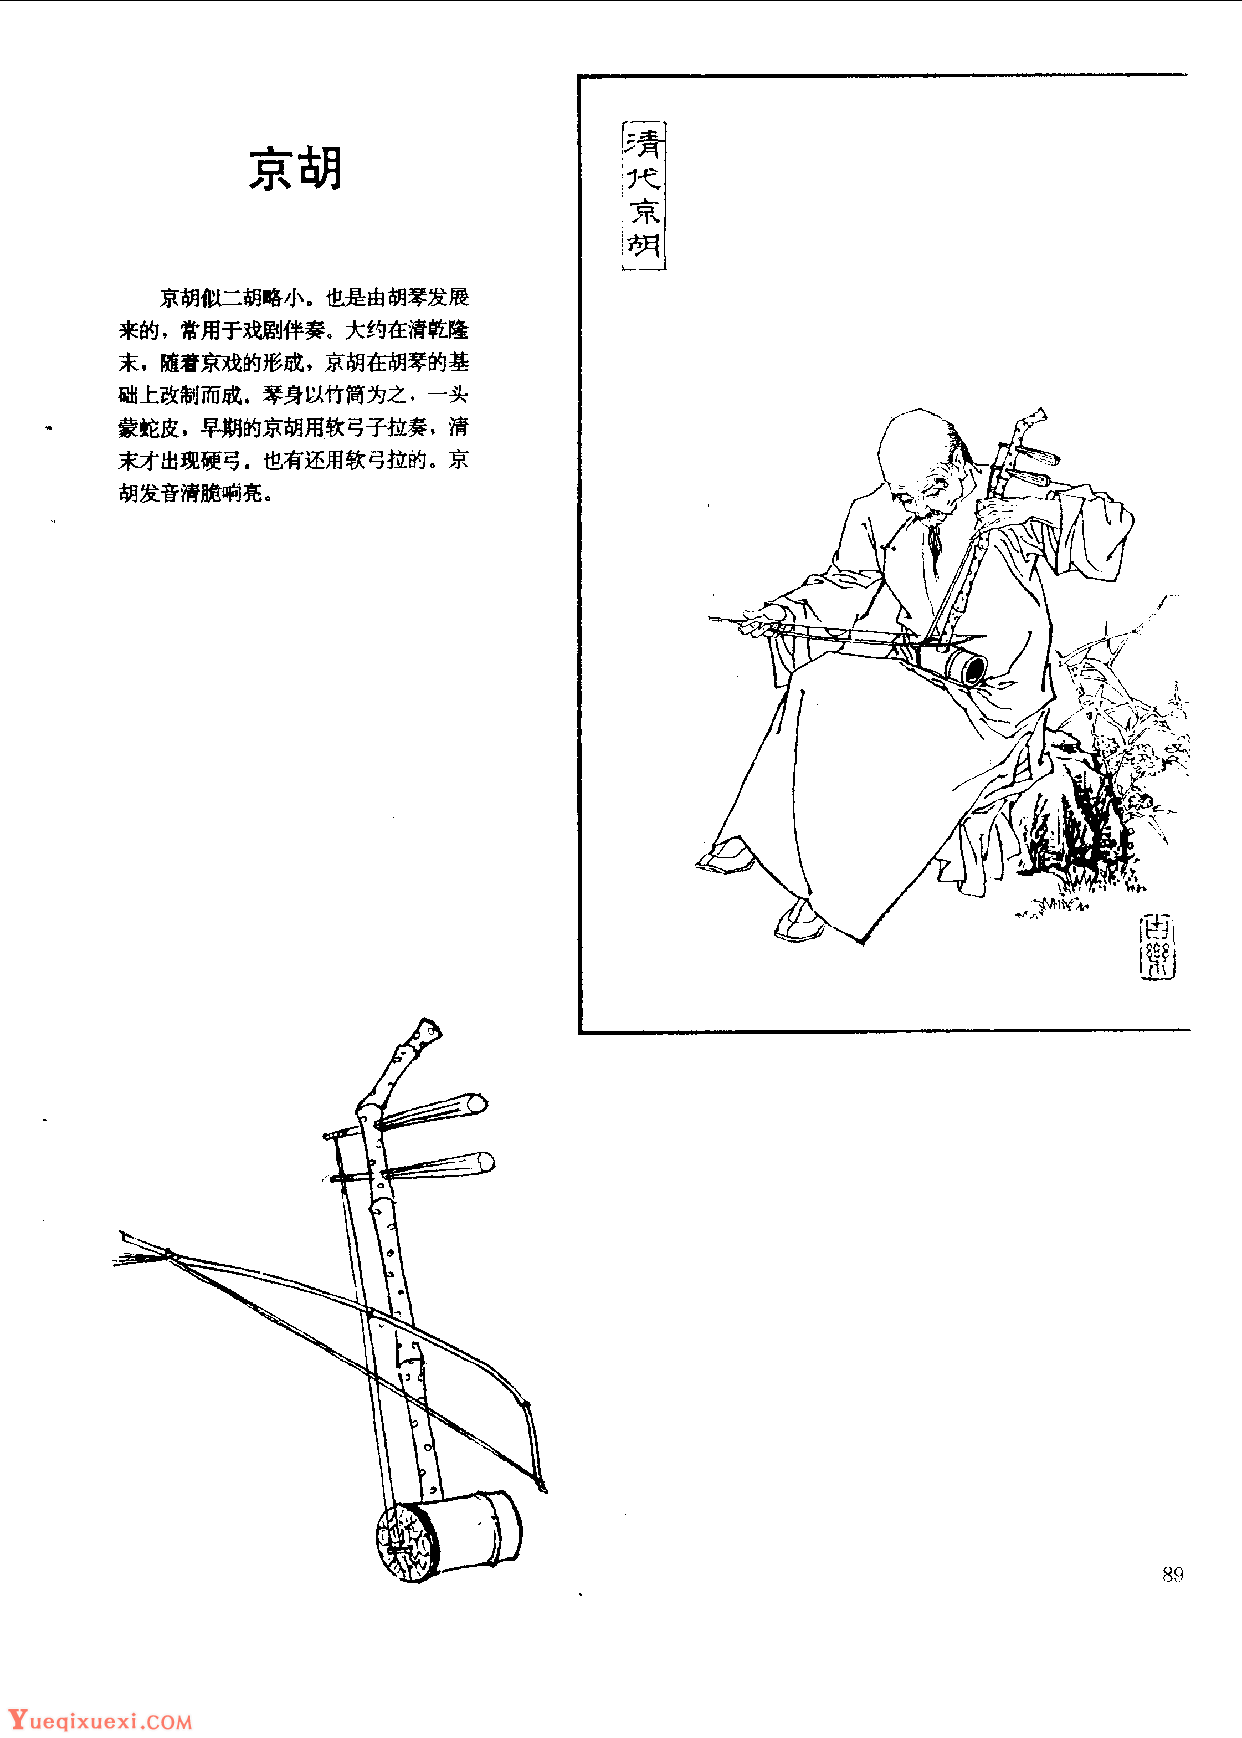 中国古代乐器《京胡》